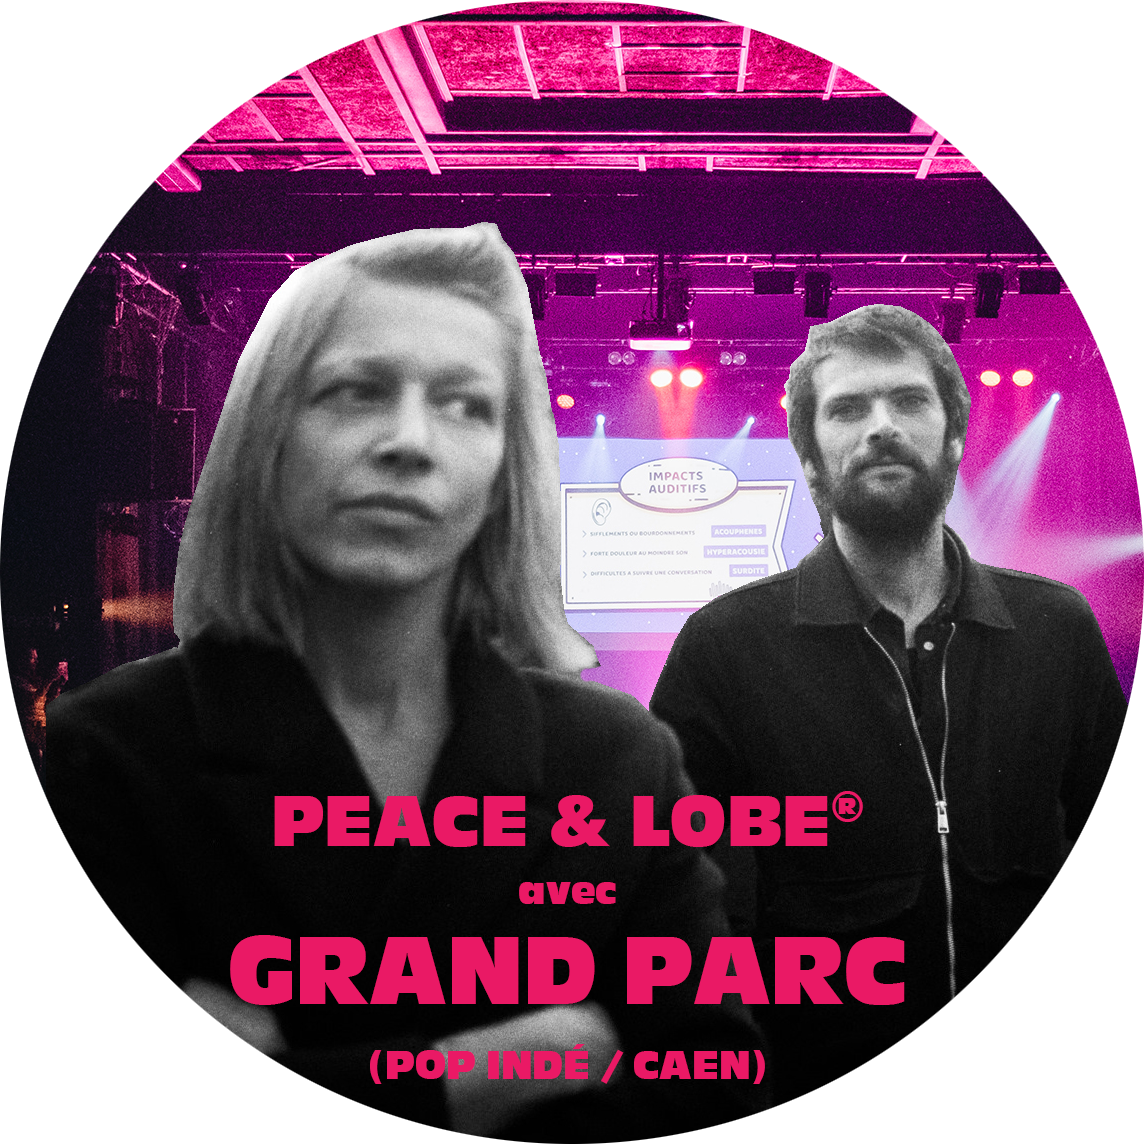 Grand Parc duo pop rock indé